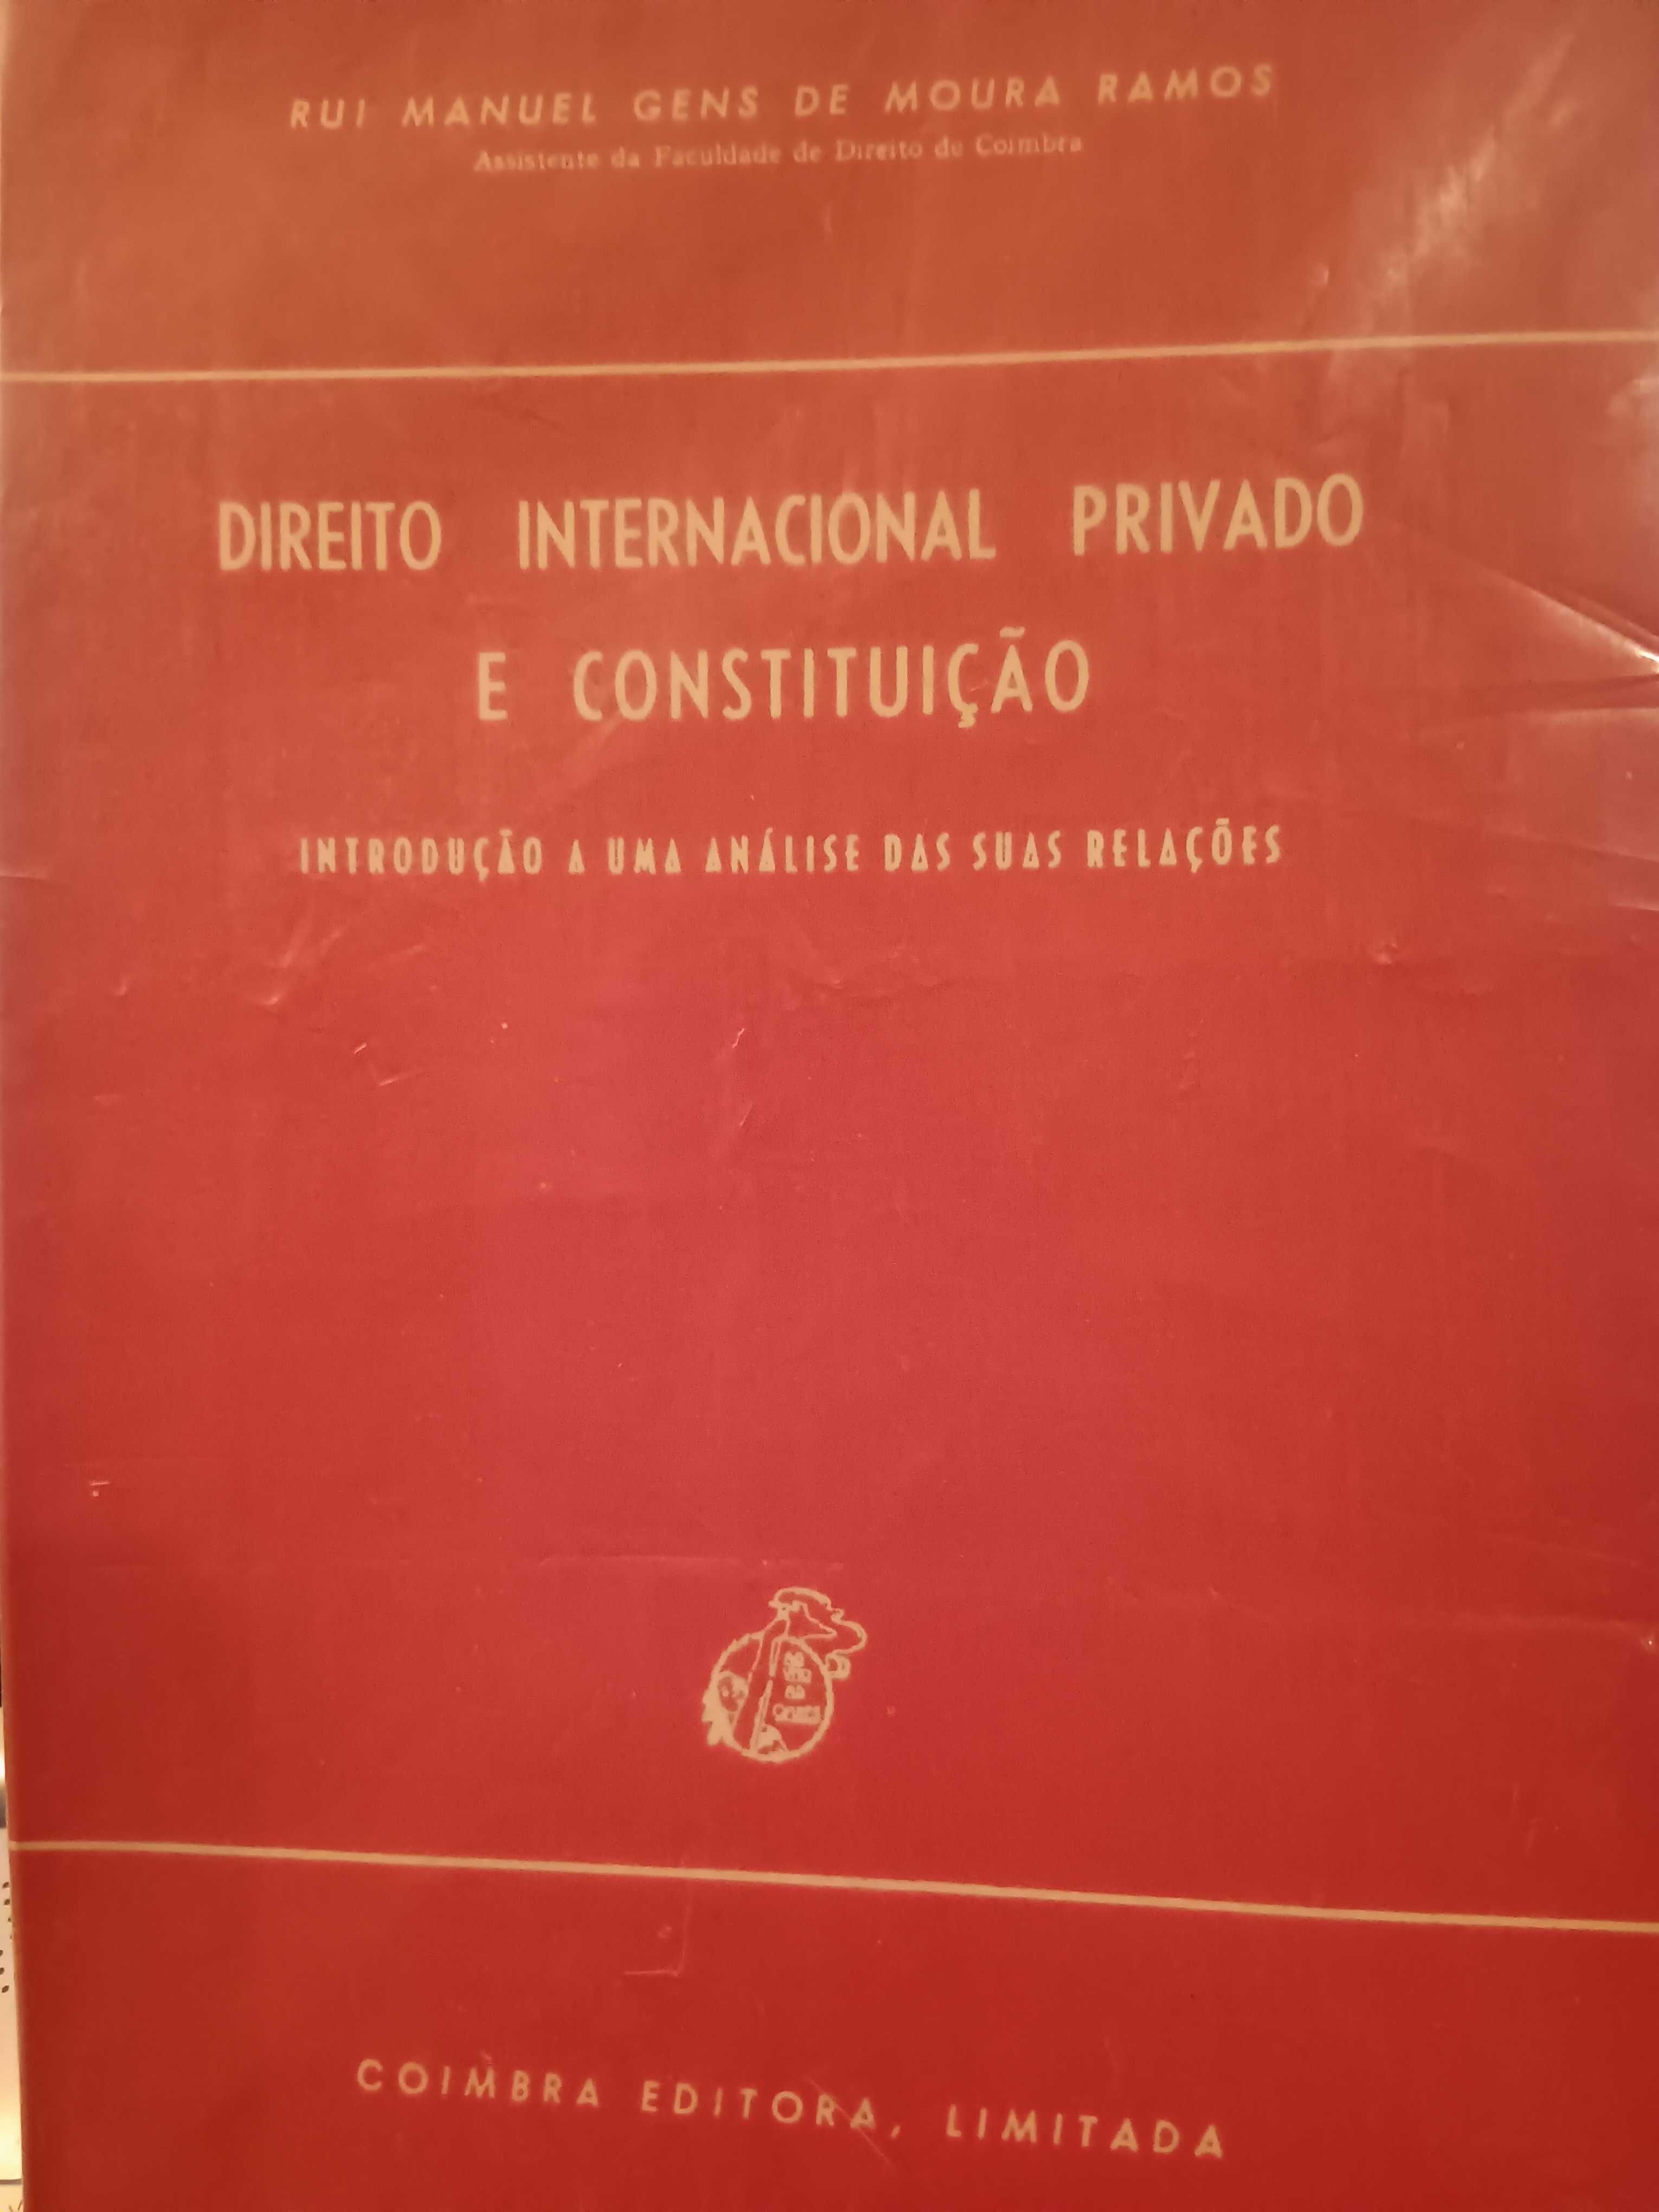 Direito Internacional Privado e Constituição, Moura Ramos